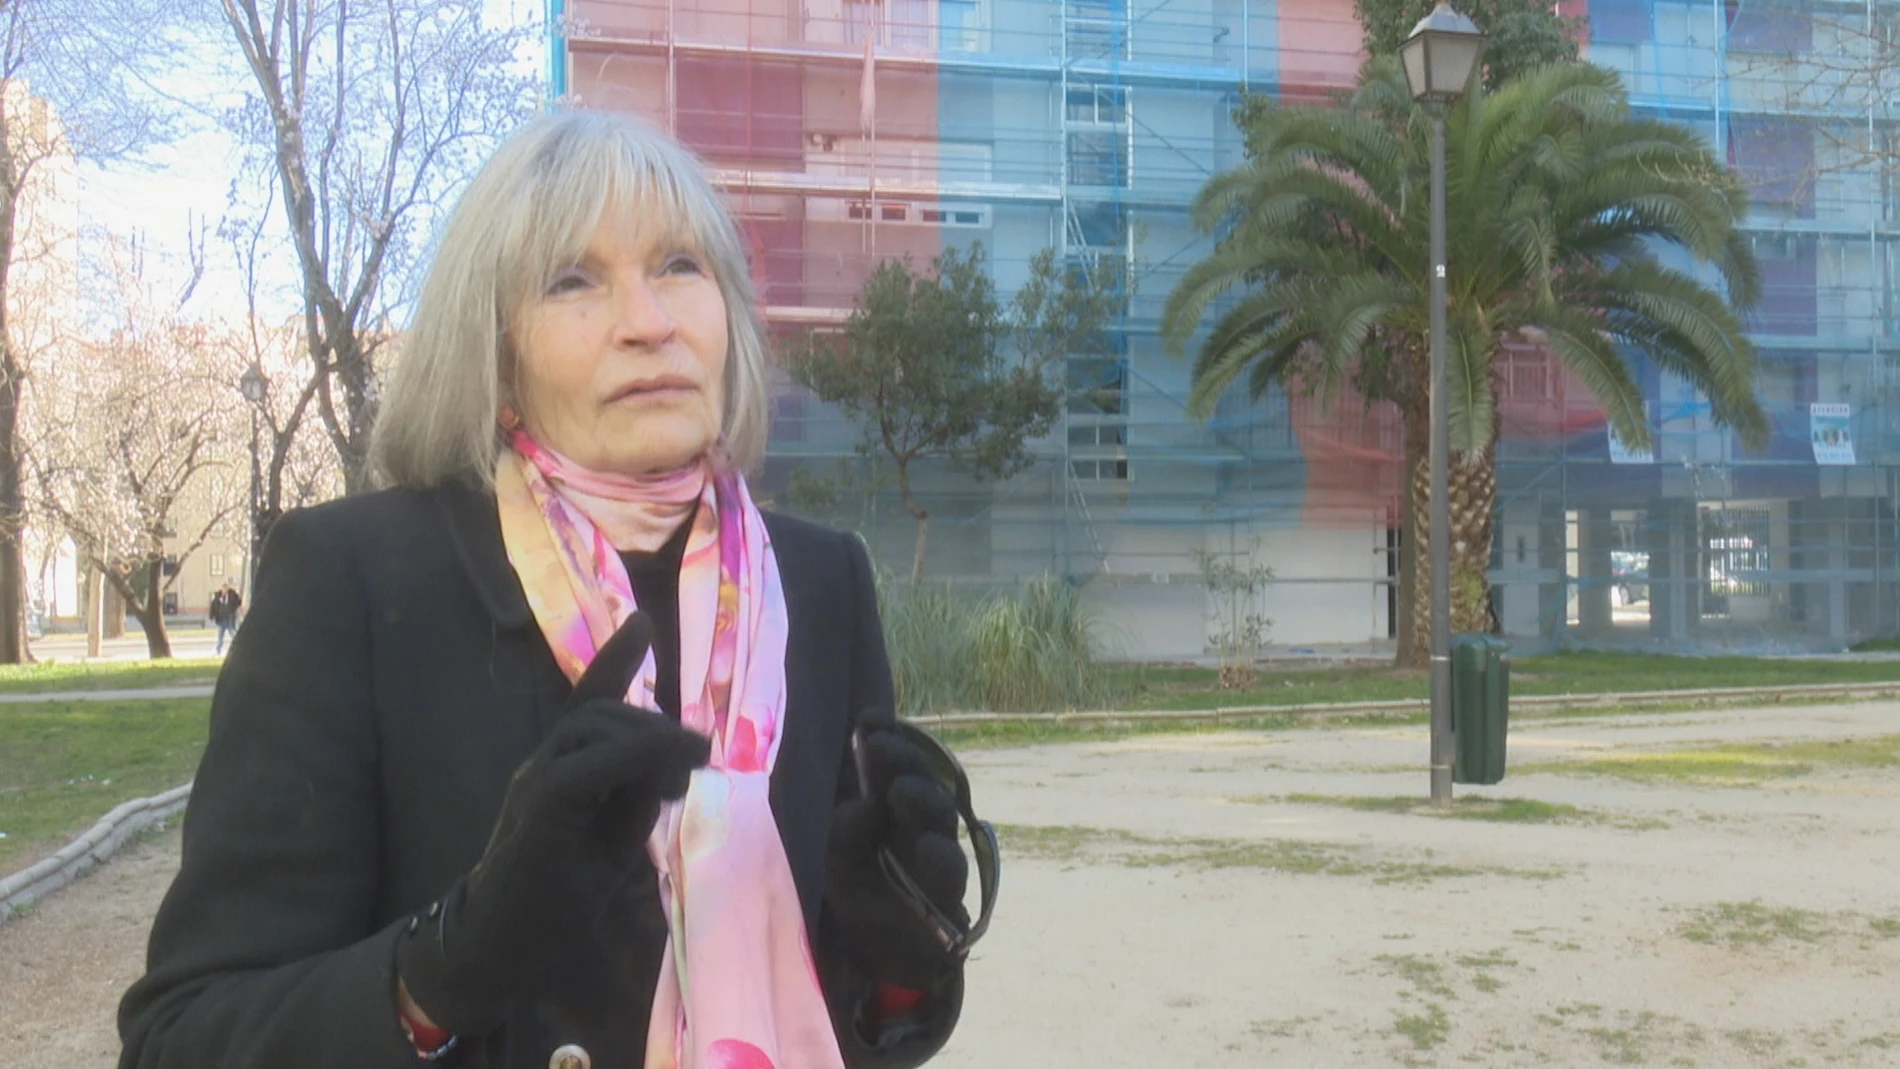 Manuela y su lucha por hacer sostenible su barrio: "Pasé de pagar 300 euros de calefacción a 58"